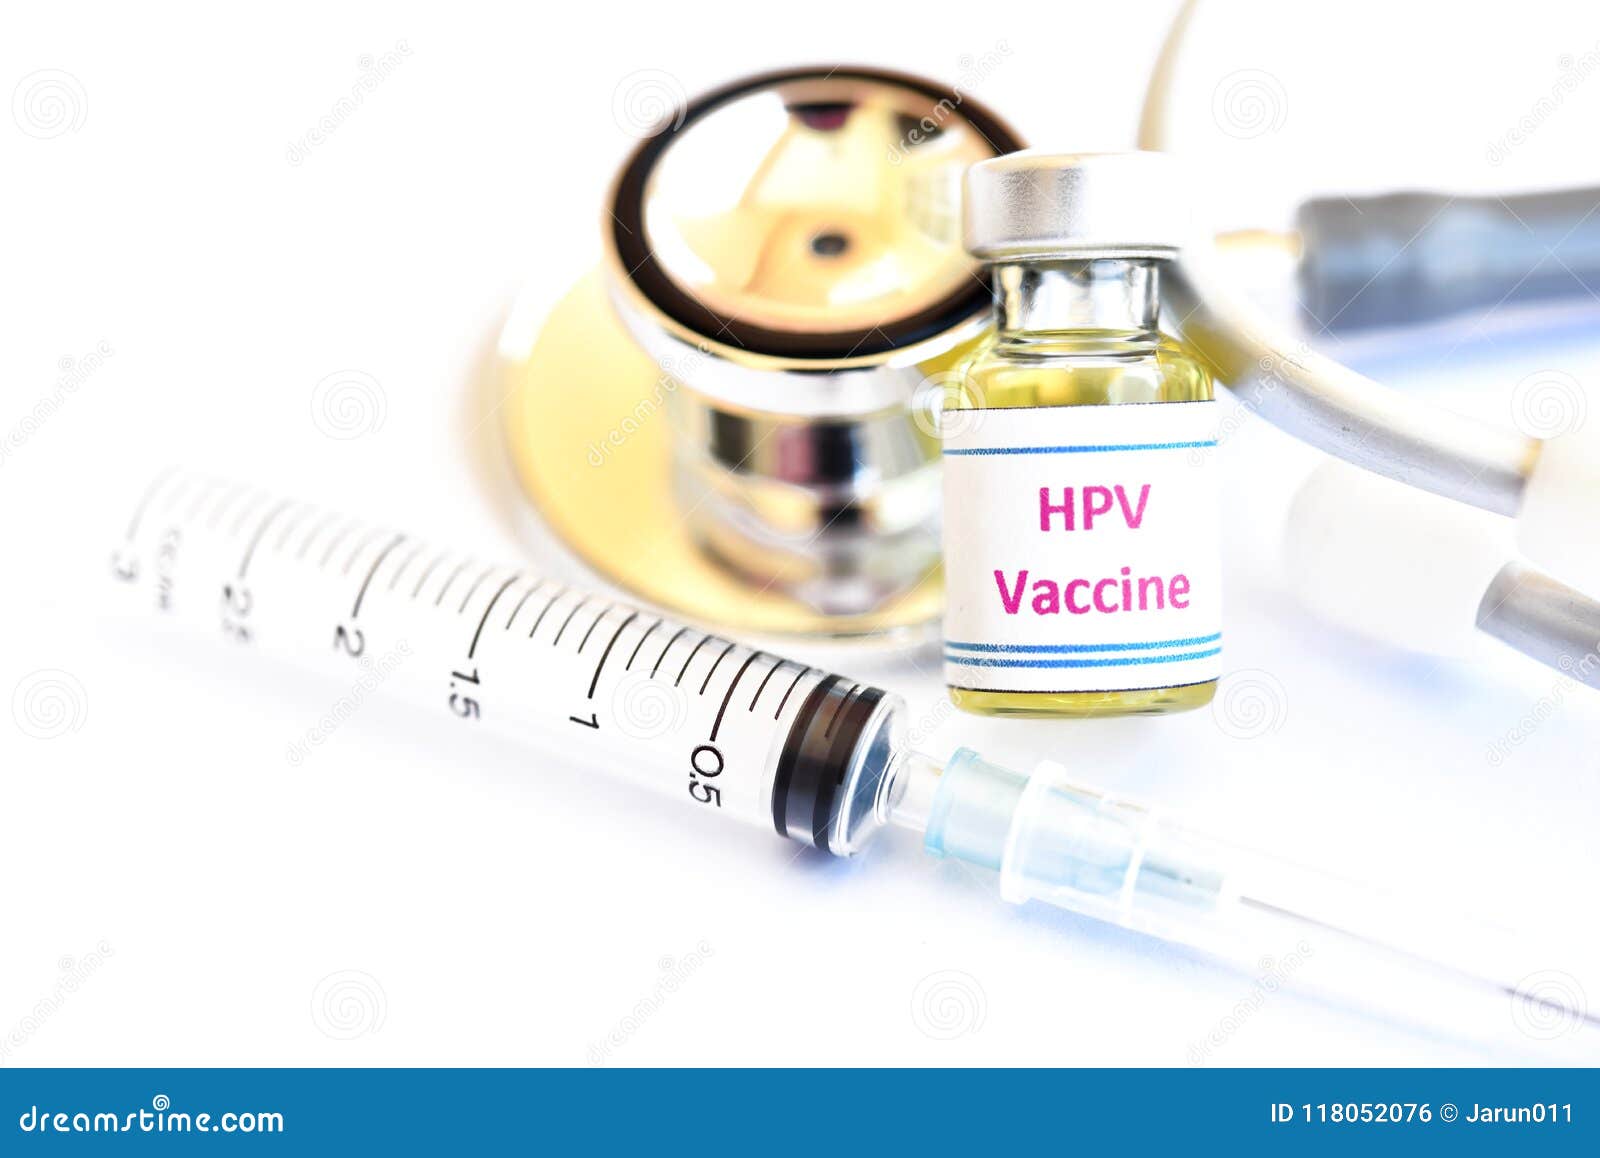 humán papillomavírus vakcina hpv)